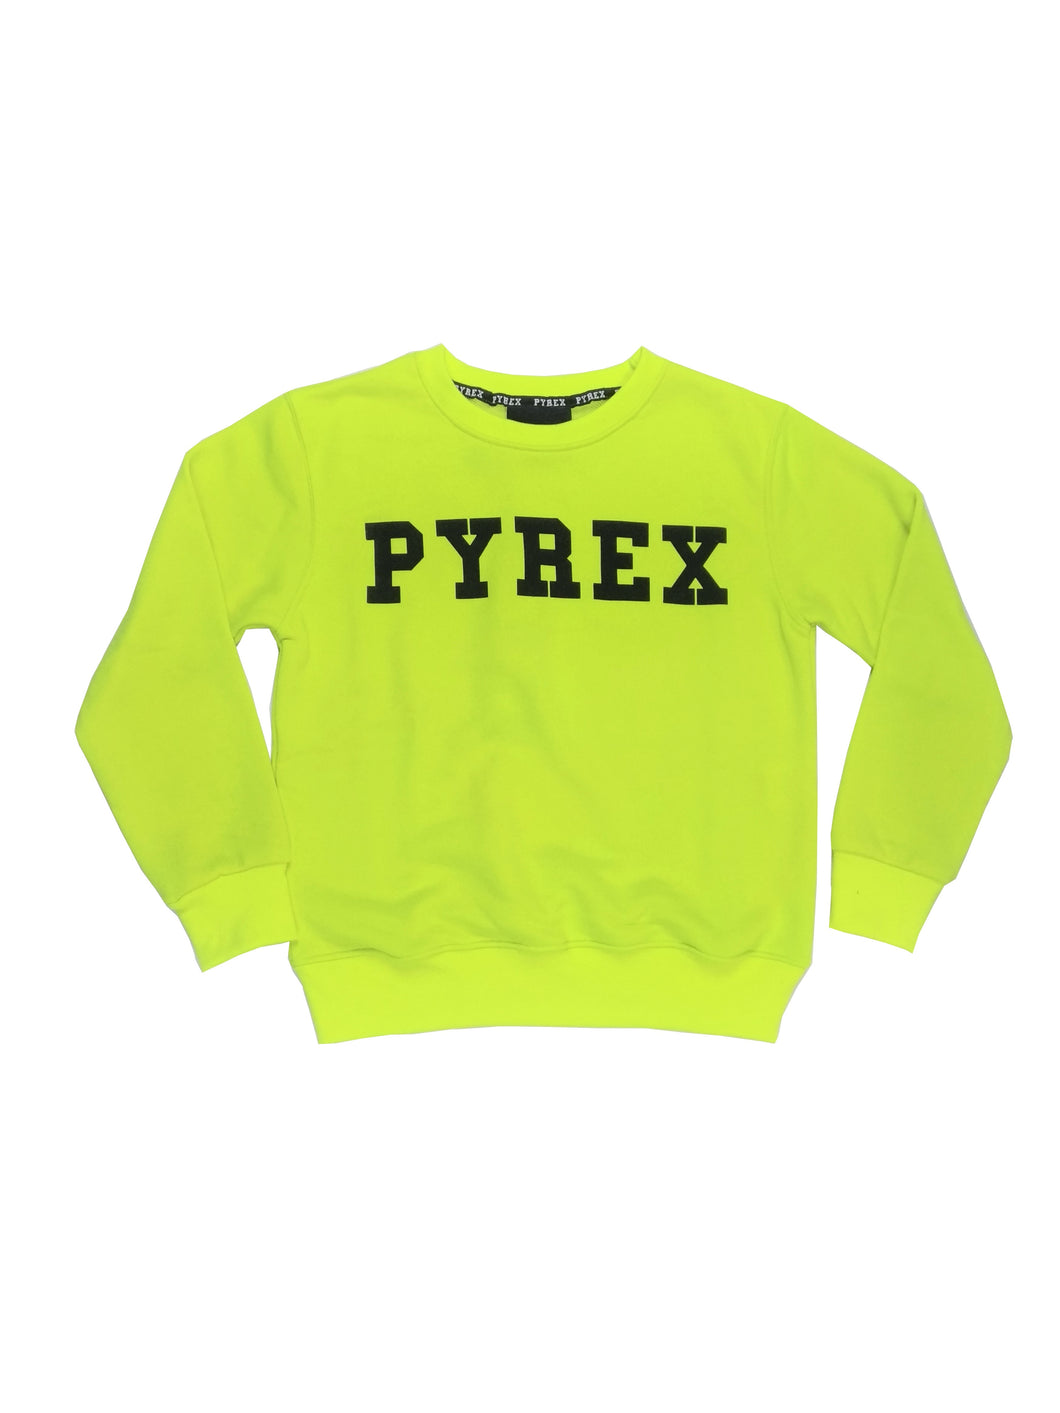 Felpa PYREX giallo fluo - Junior & Co.it